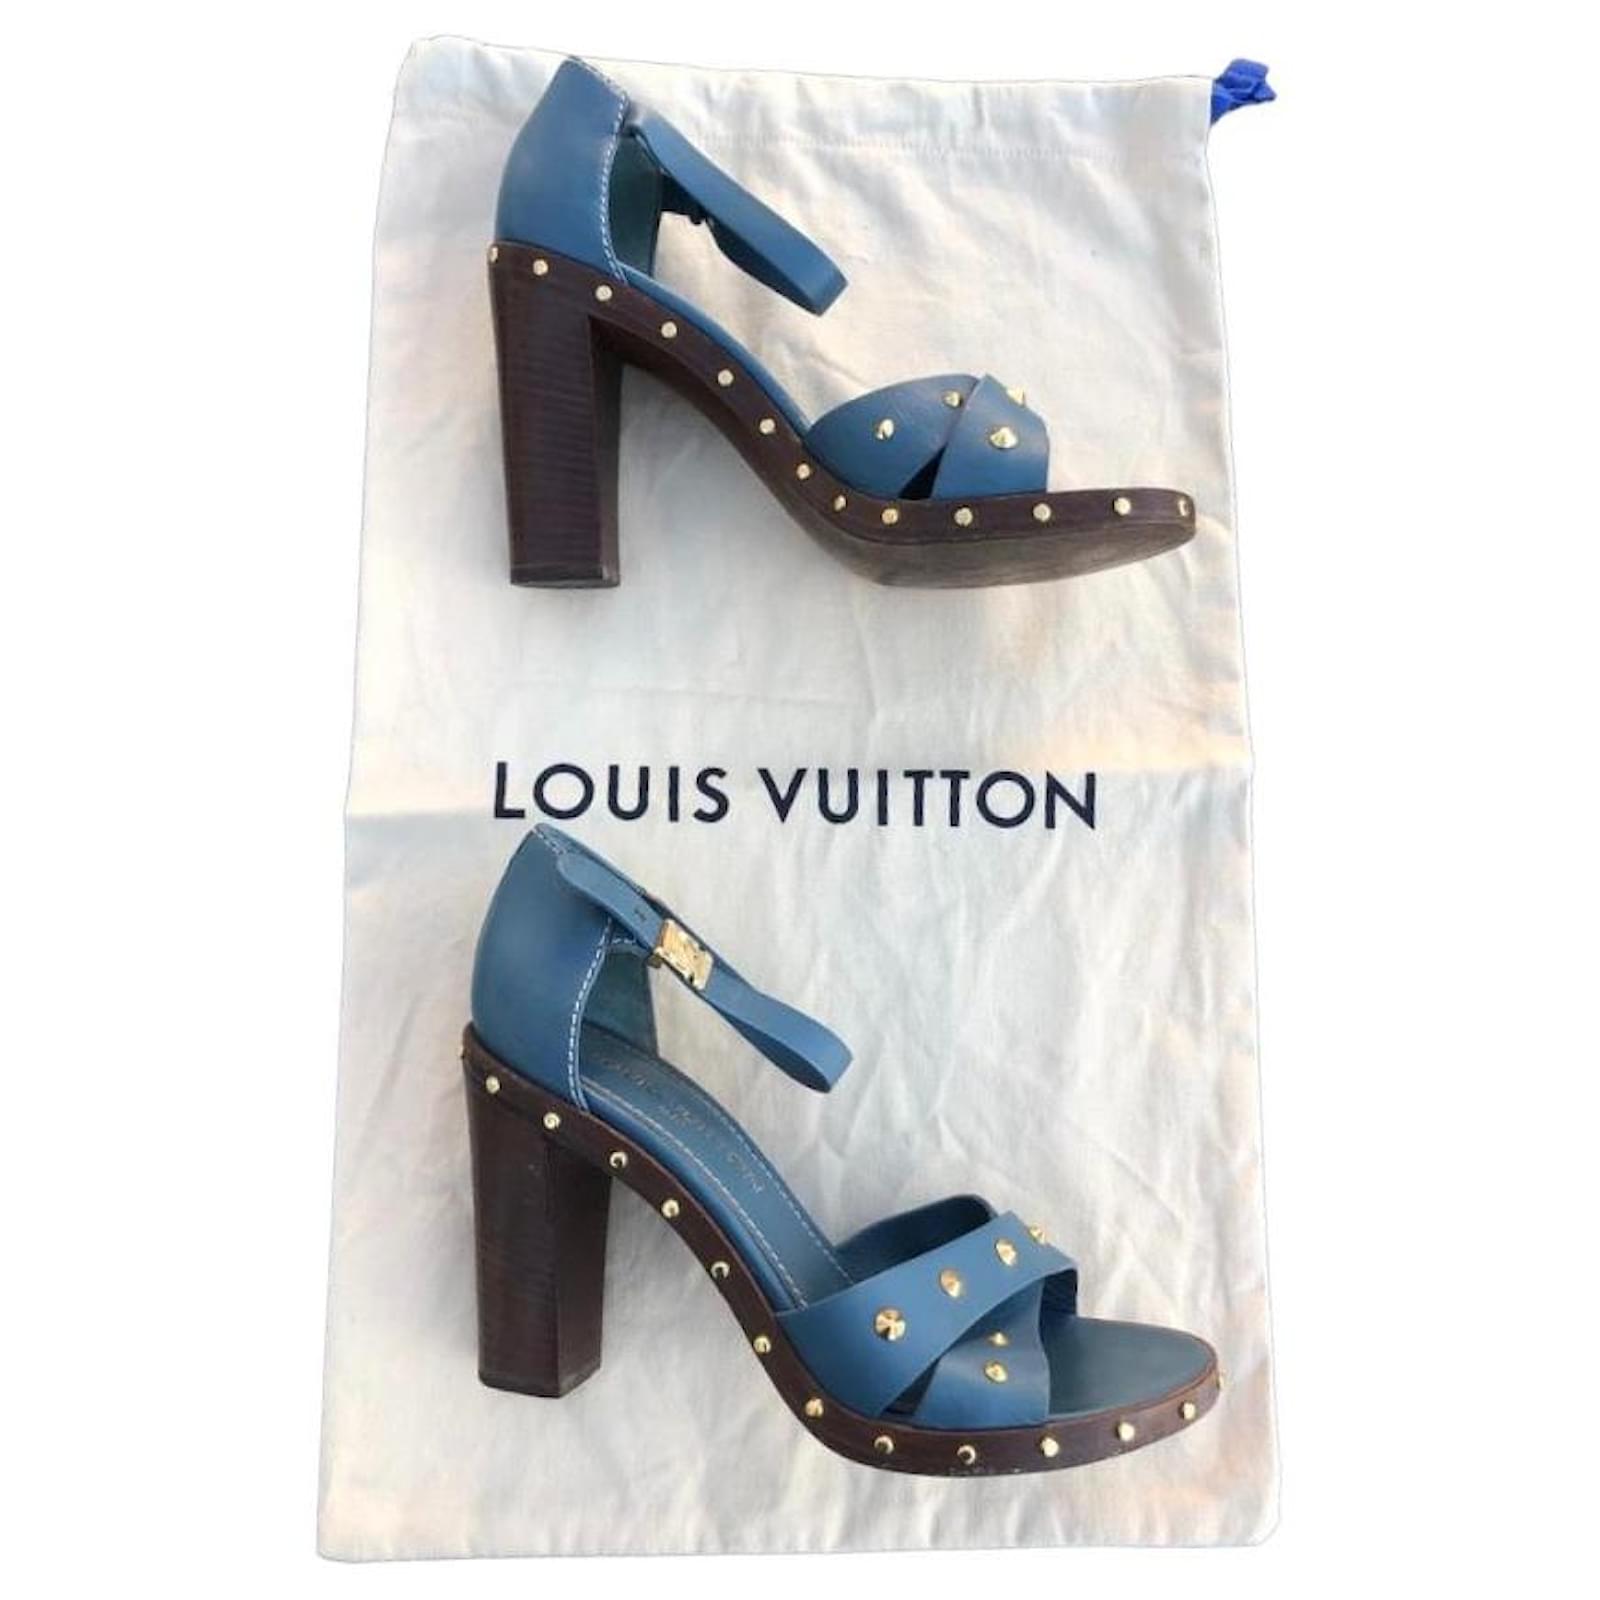 LV Heels  Louis vuitton heels, Louis vuitton shoes heels, Lv heels